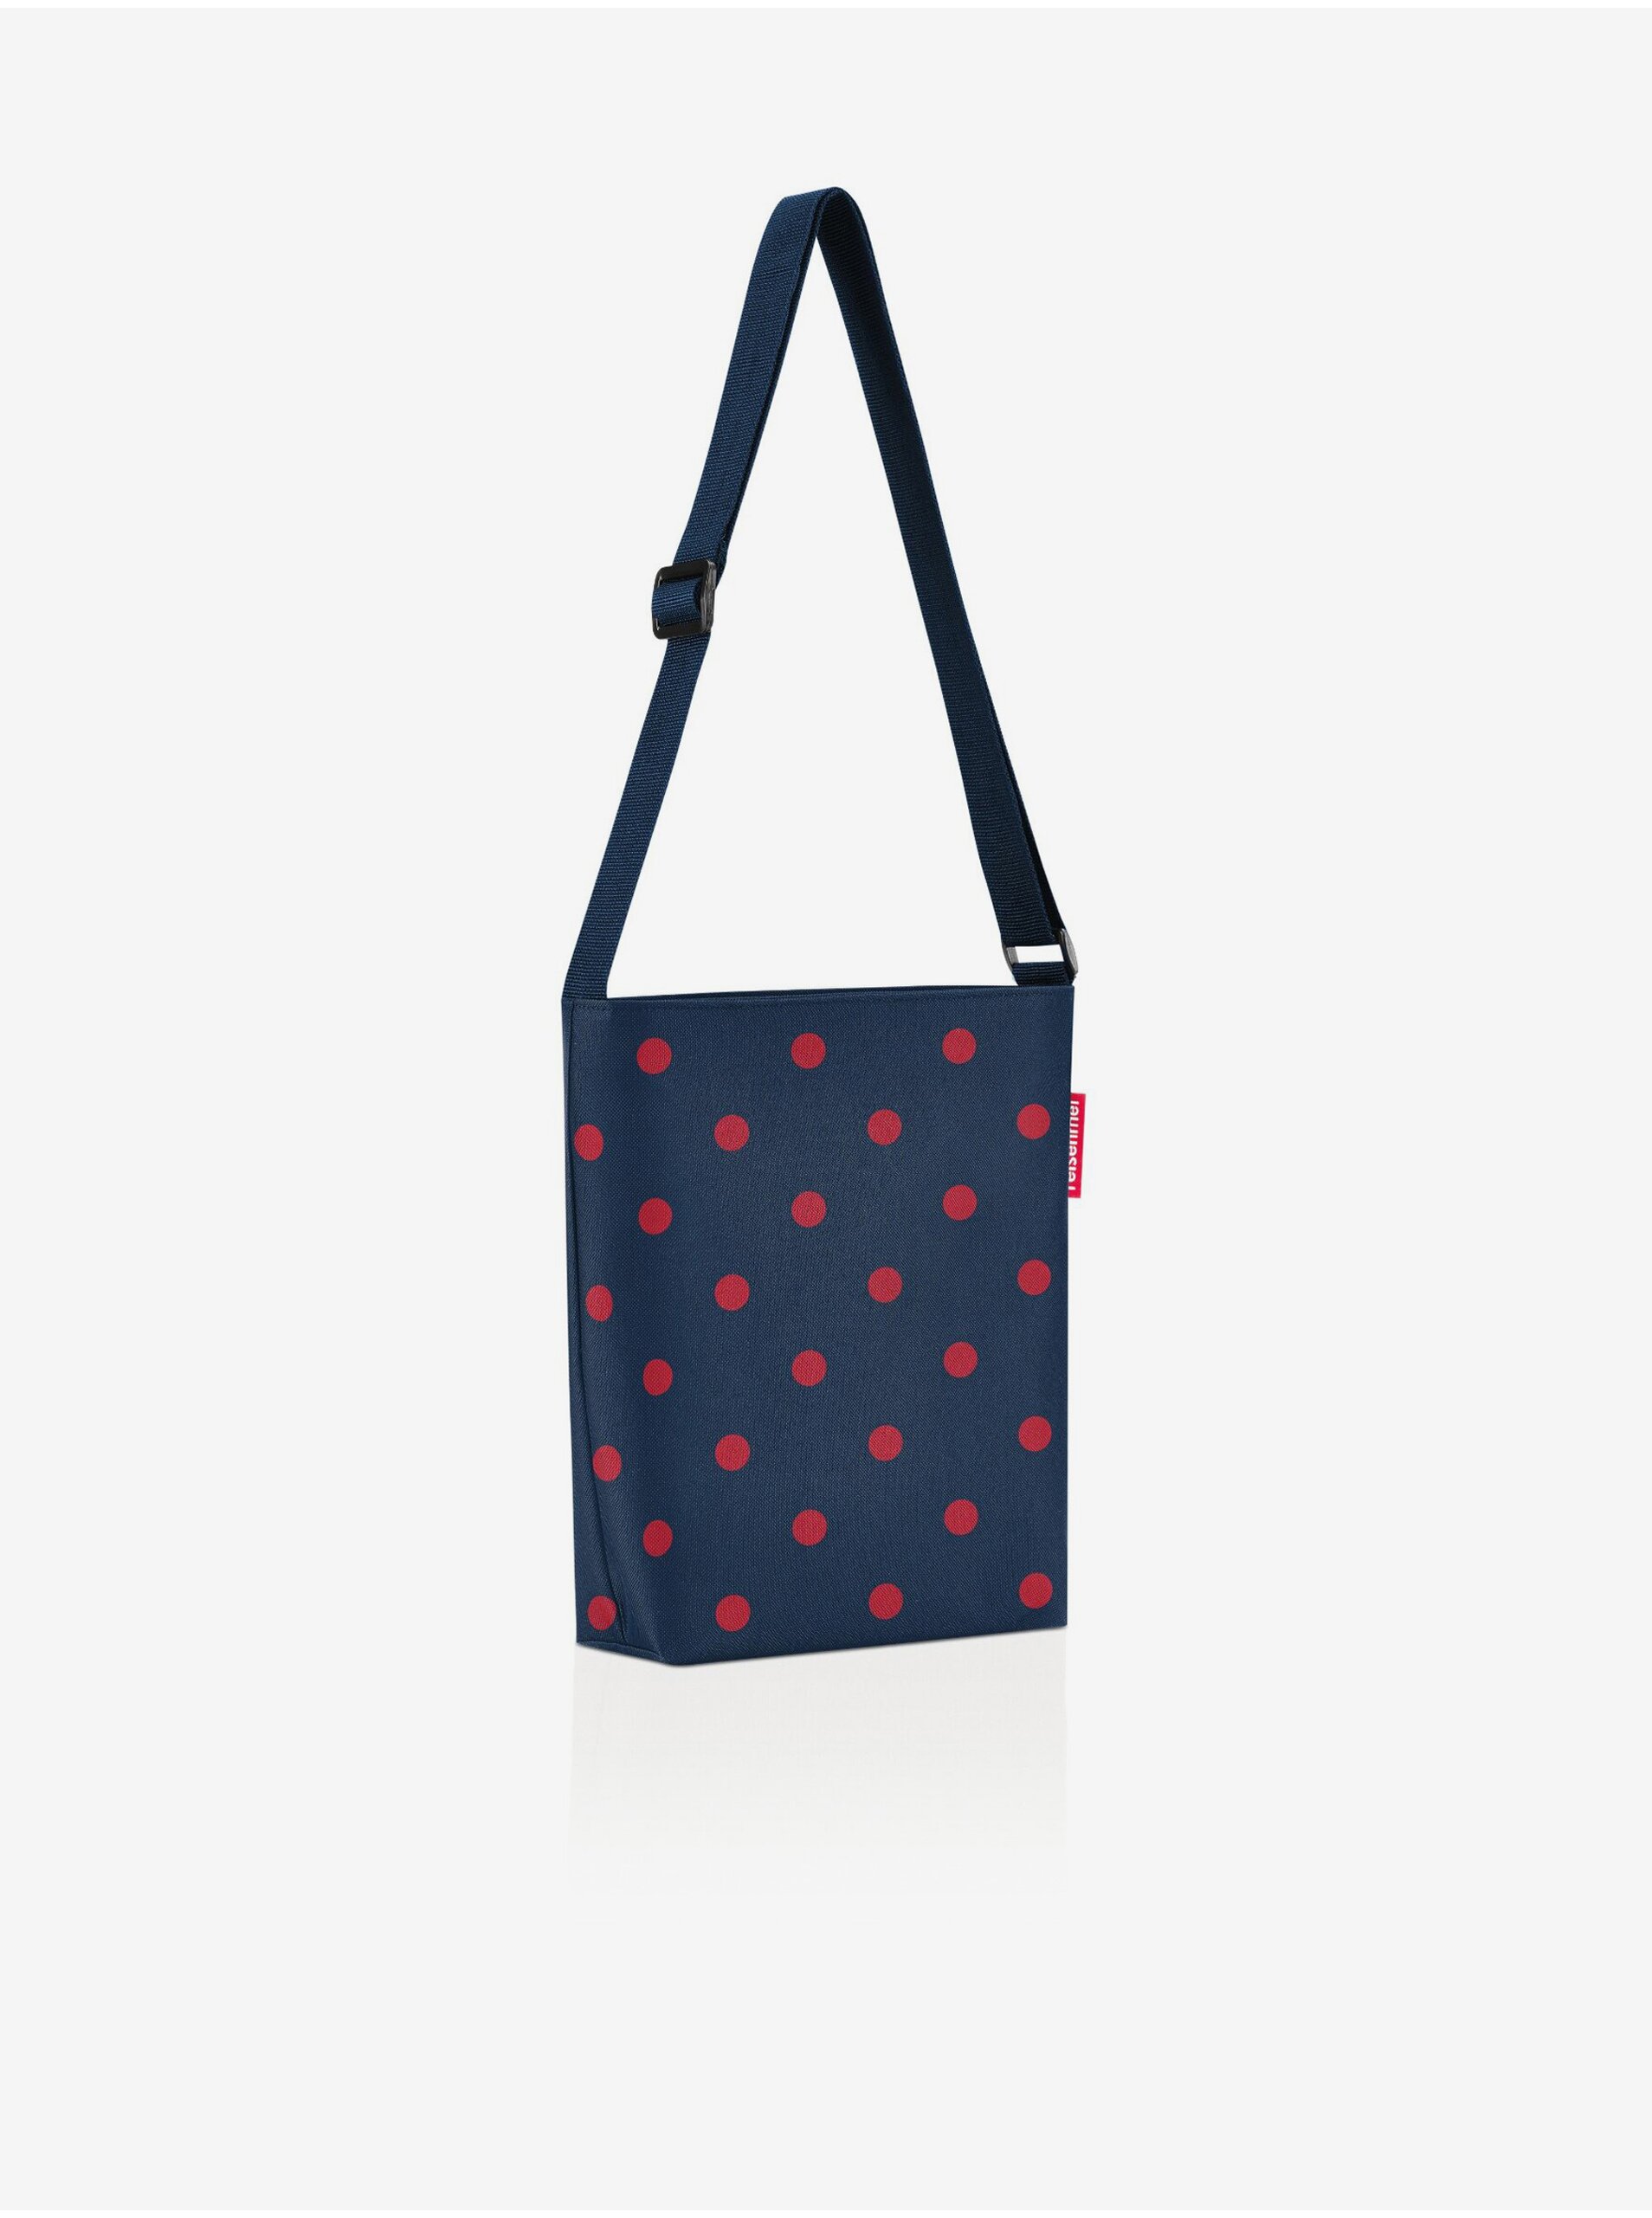 Lacno Tmavomodrá dámska bodkovaná kabelka cez rameno Reisenthel Shoulderbag S Mixed Dots Red